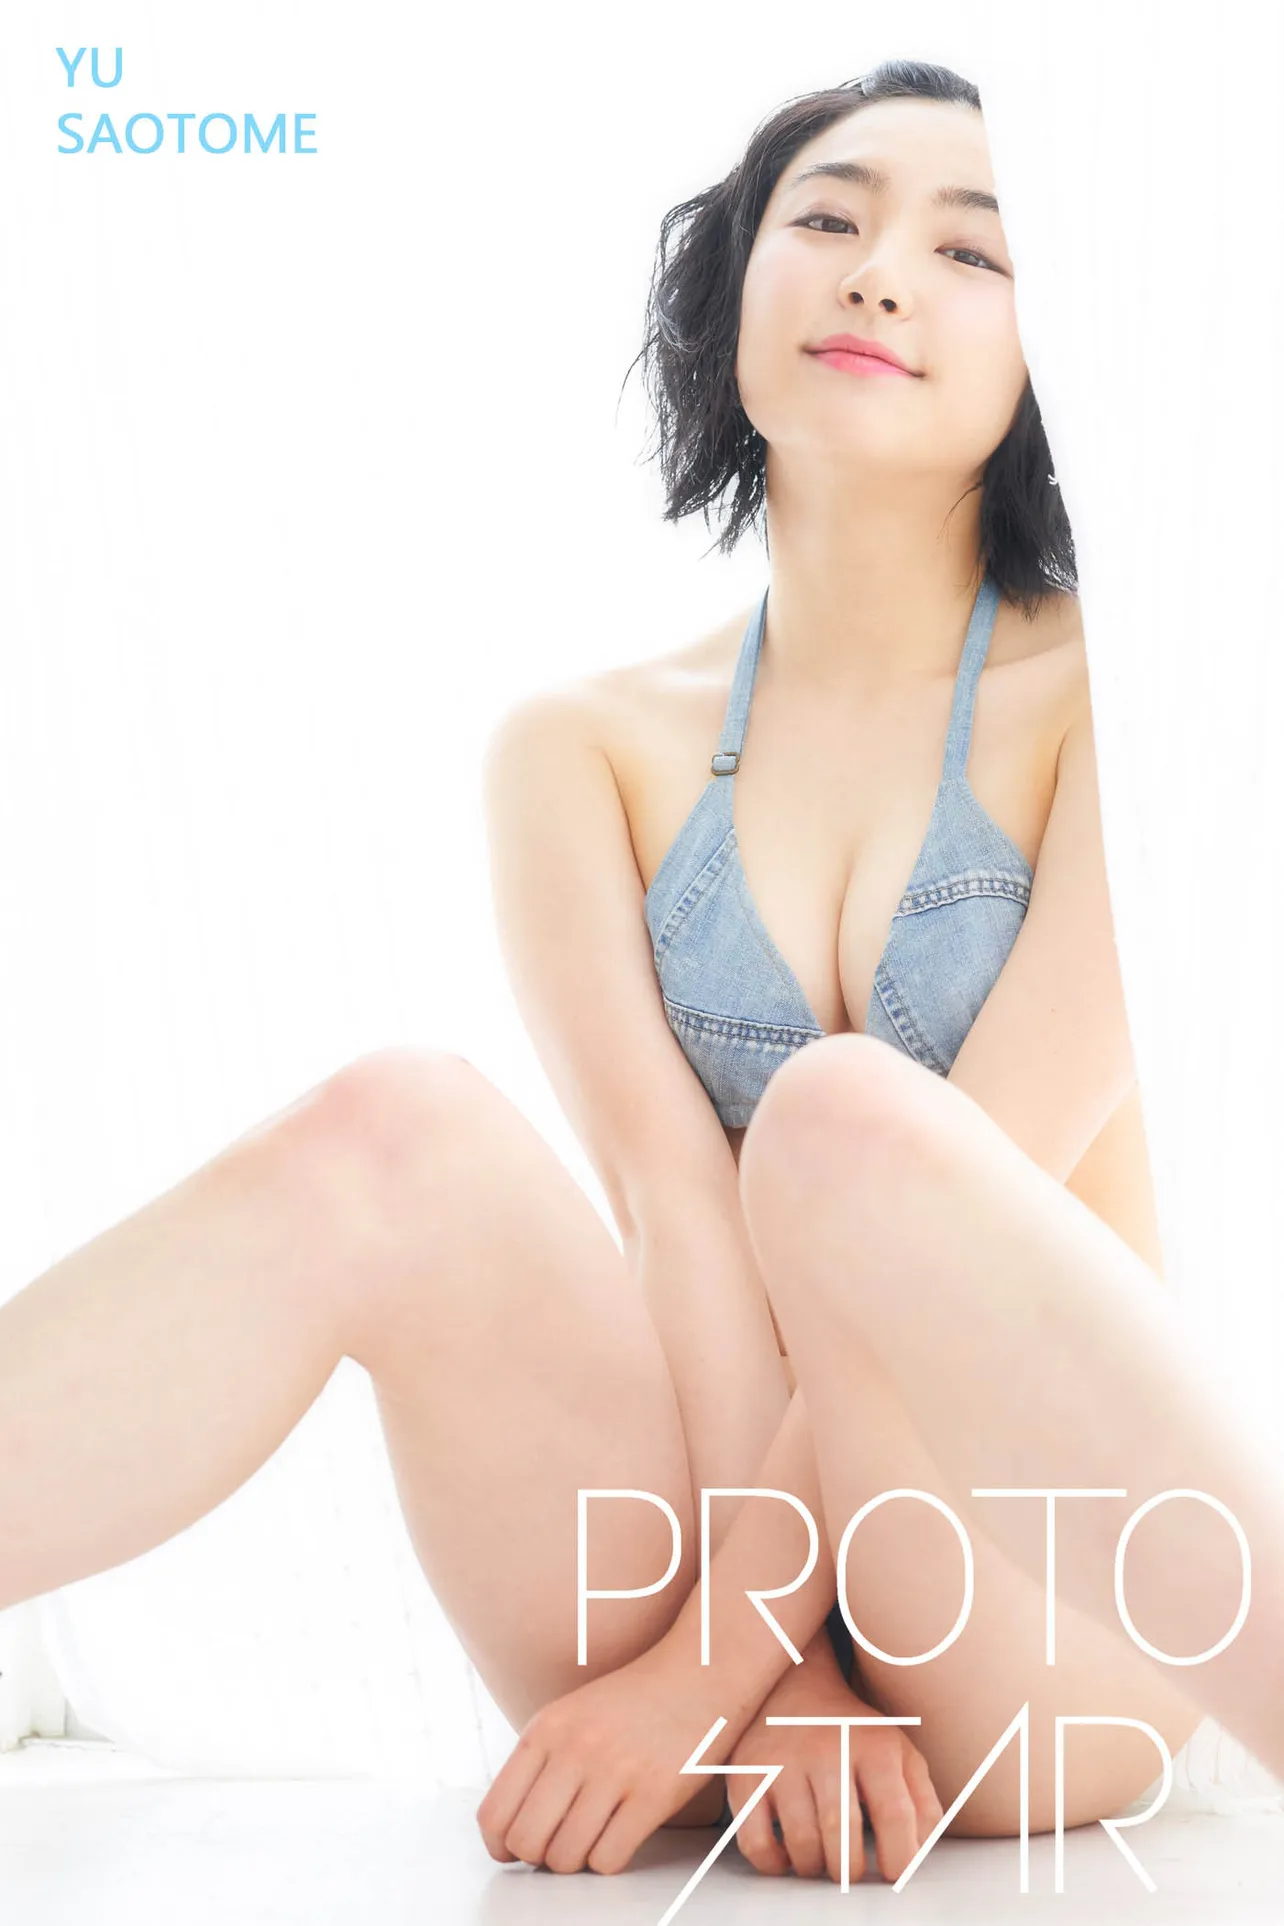 デジタル写真集「PROTO STAR 早乙女ゆう vol.3」は11月から順次各主要サイトで配信